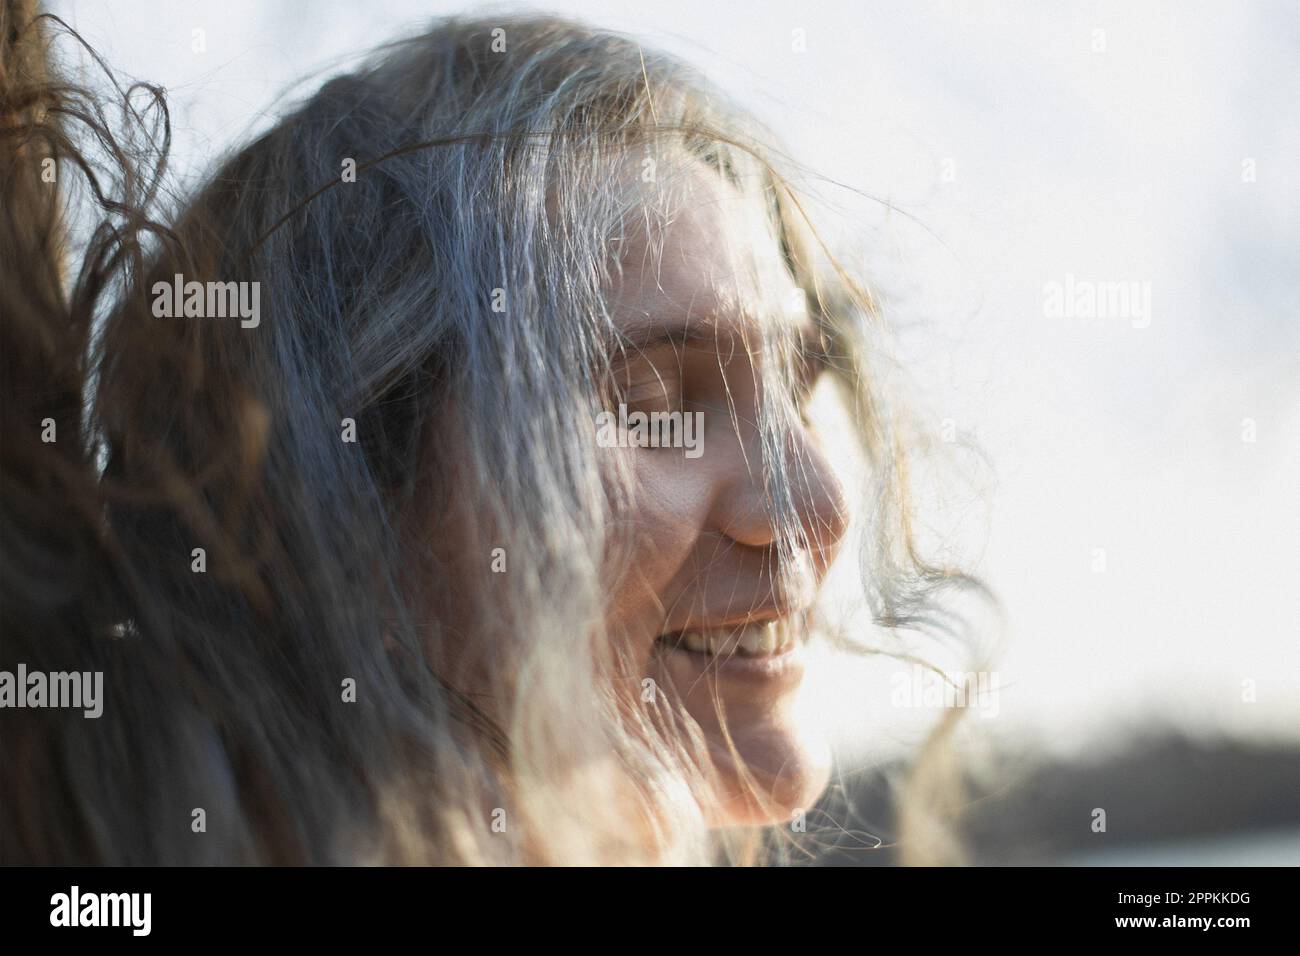 Primo piano Tousled grigio donna capelli ridendo con gli occhi chiusi ritratto immagine Foto Stock